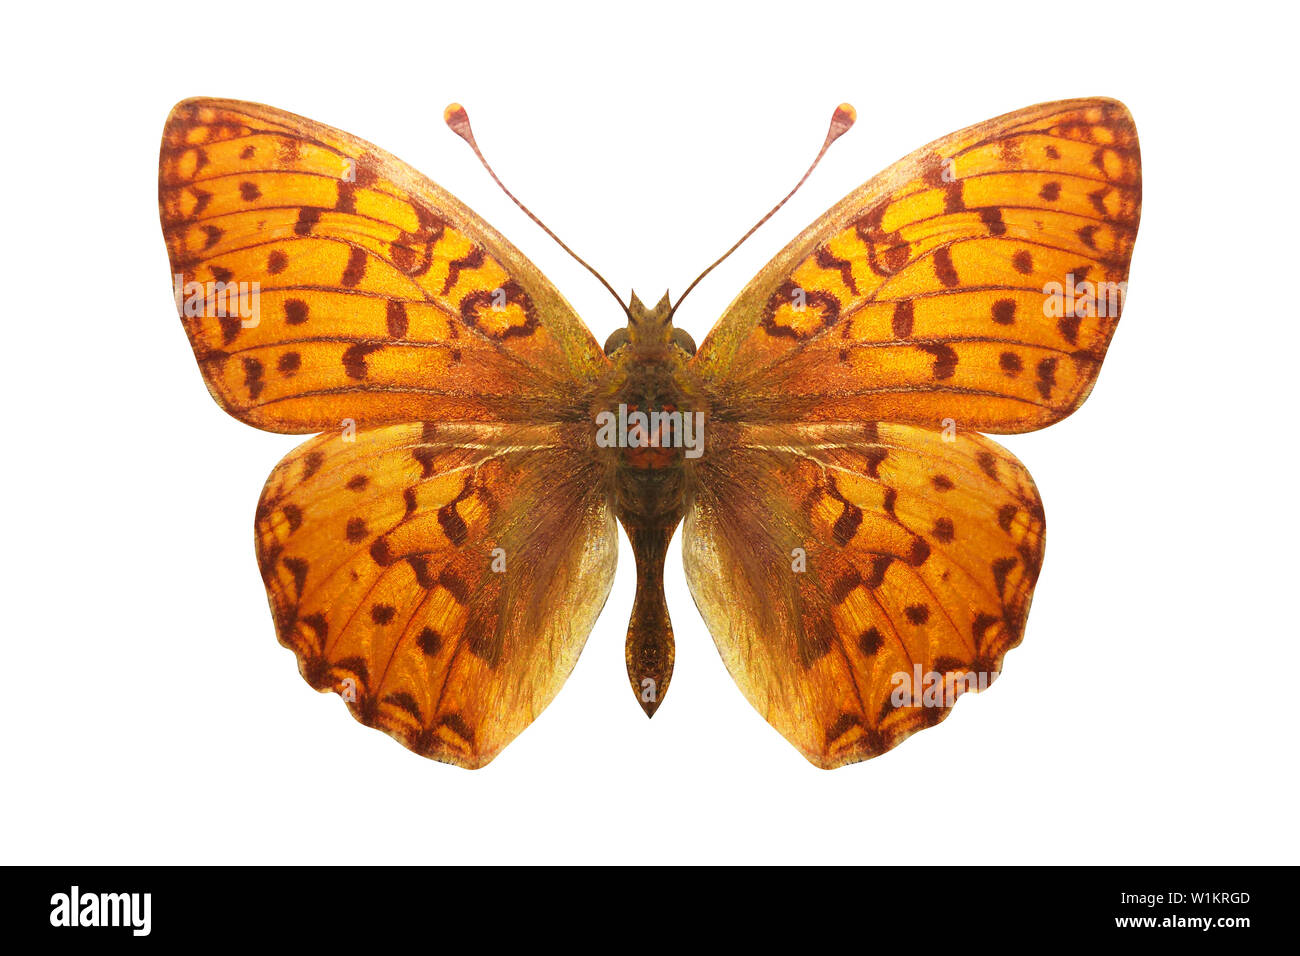 Farfalla arancione con macchie di leopard. razza Argynnis aglaja. isolato su sfondo bianco Foto Stock